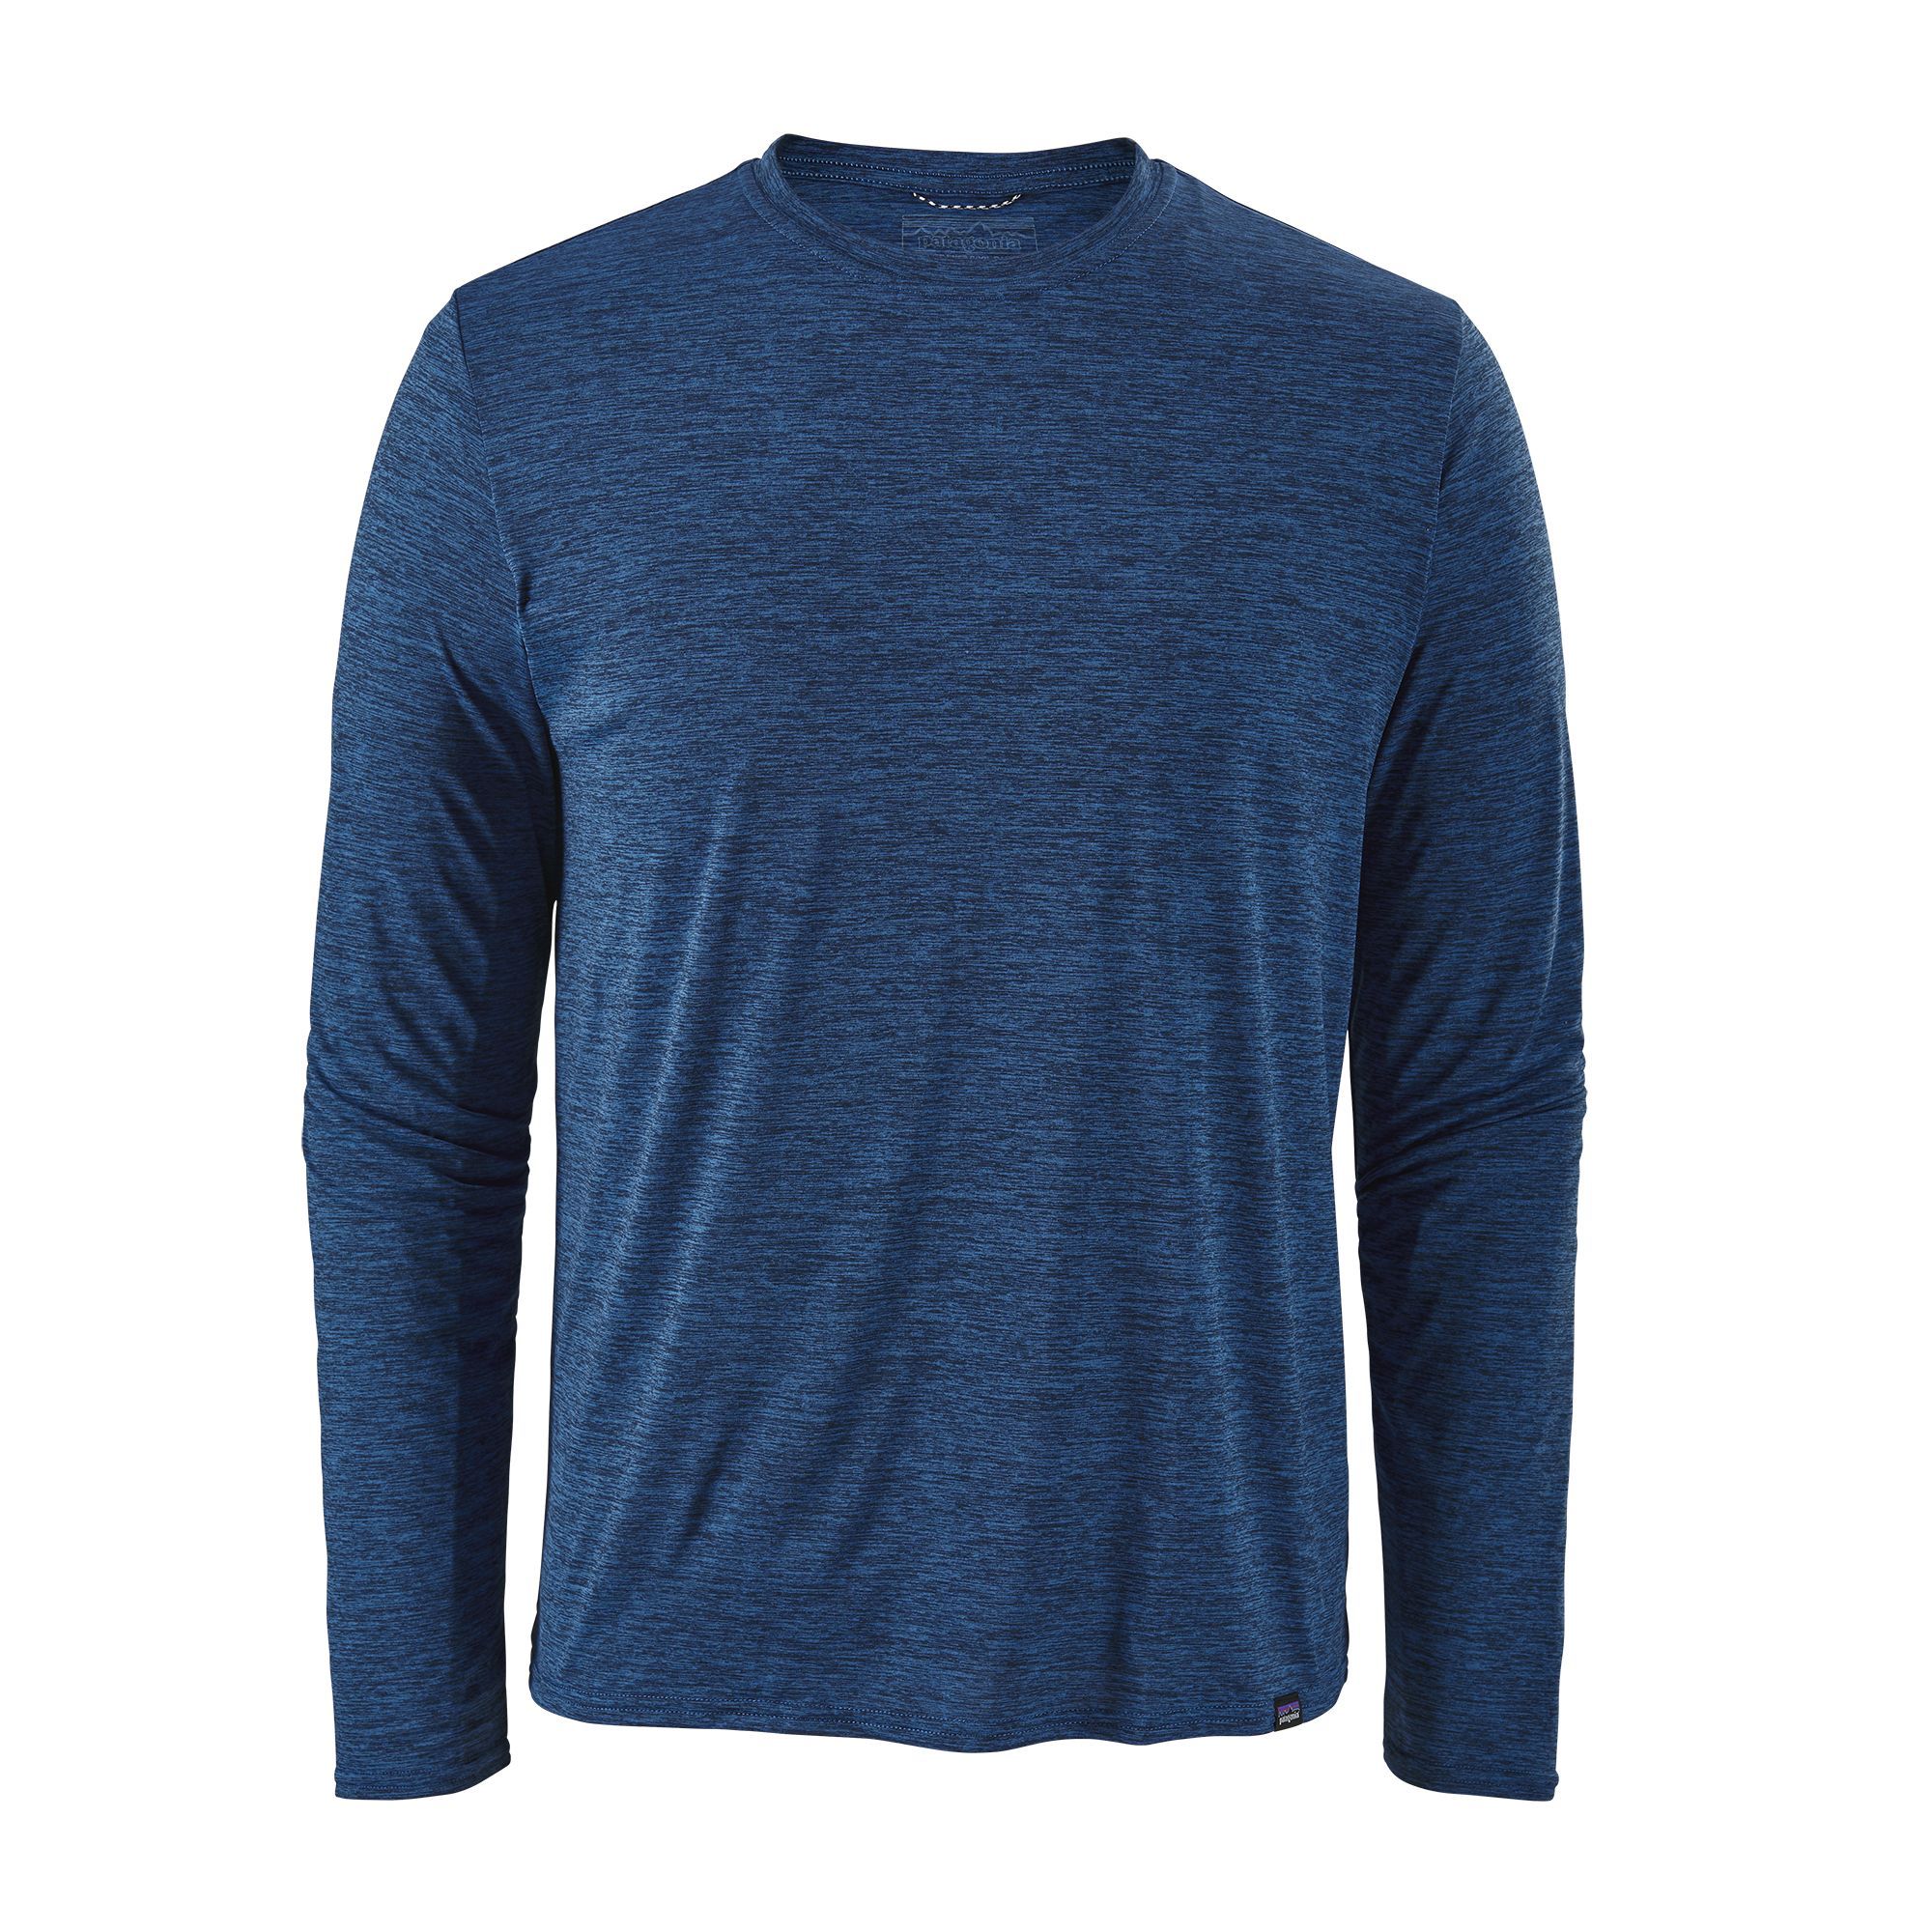 T-shirt Men's Long-Sleeved Capilene Cool Daily Shirt - Bleu